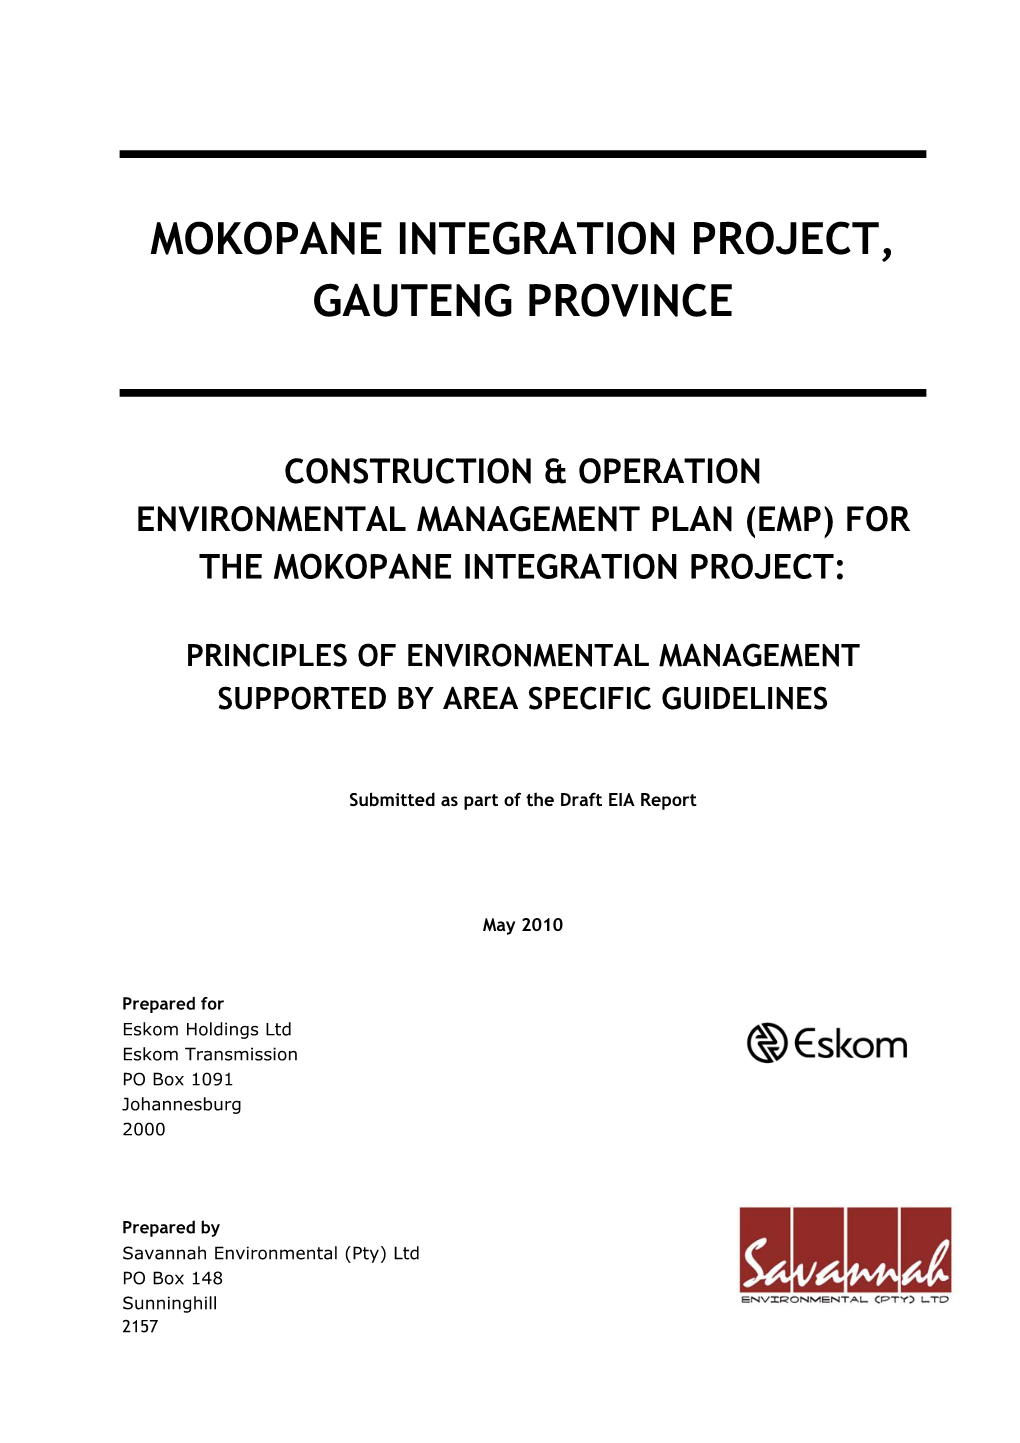 Mokopane Integration Project, Gauteng Province